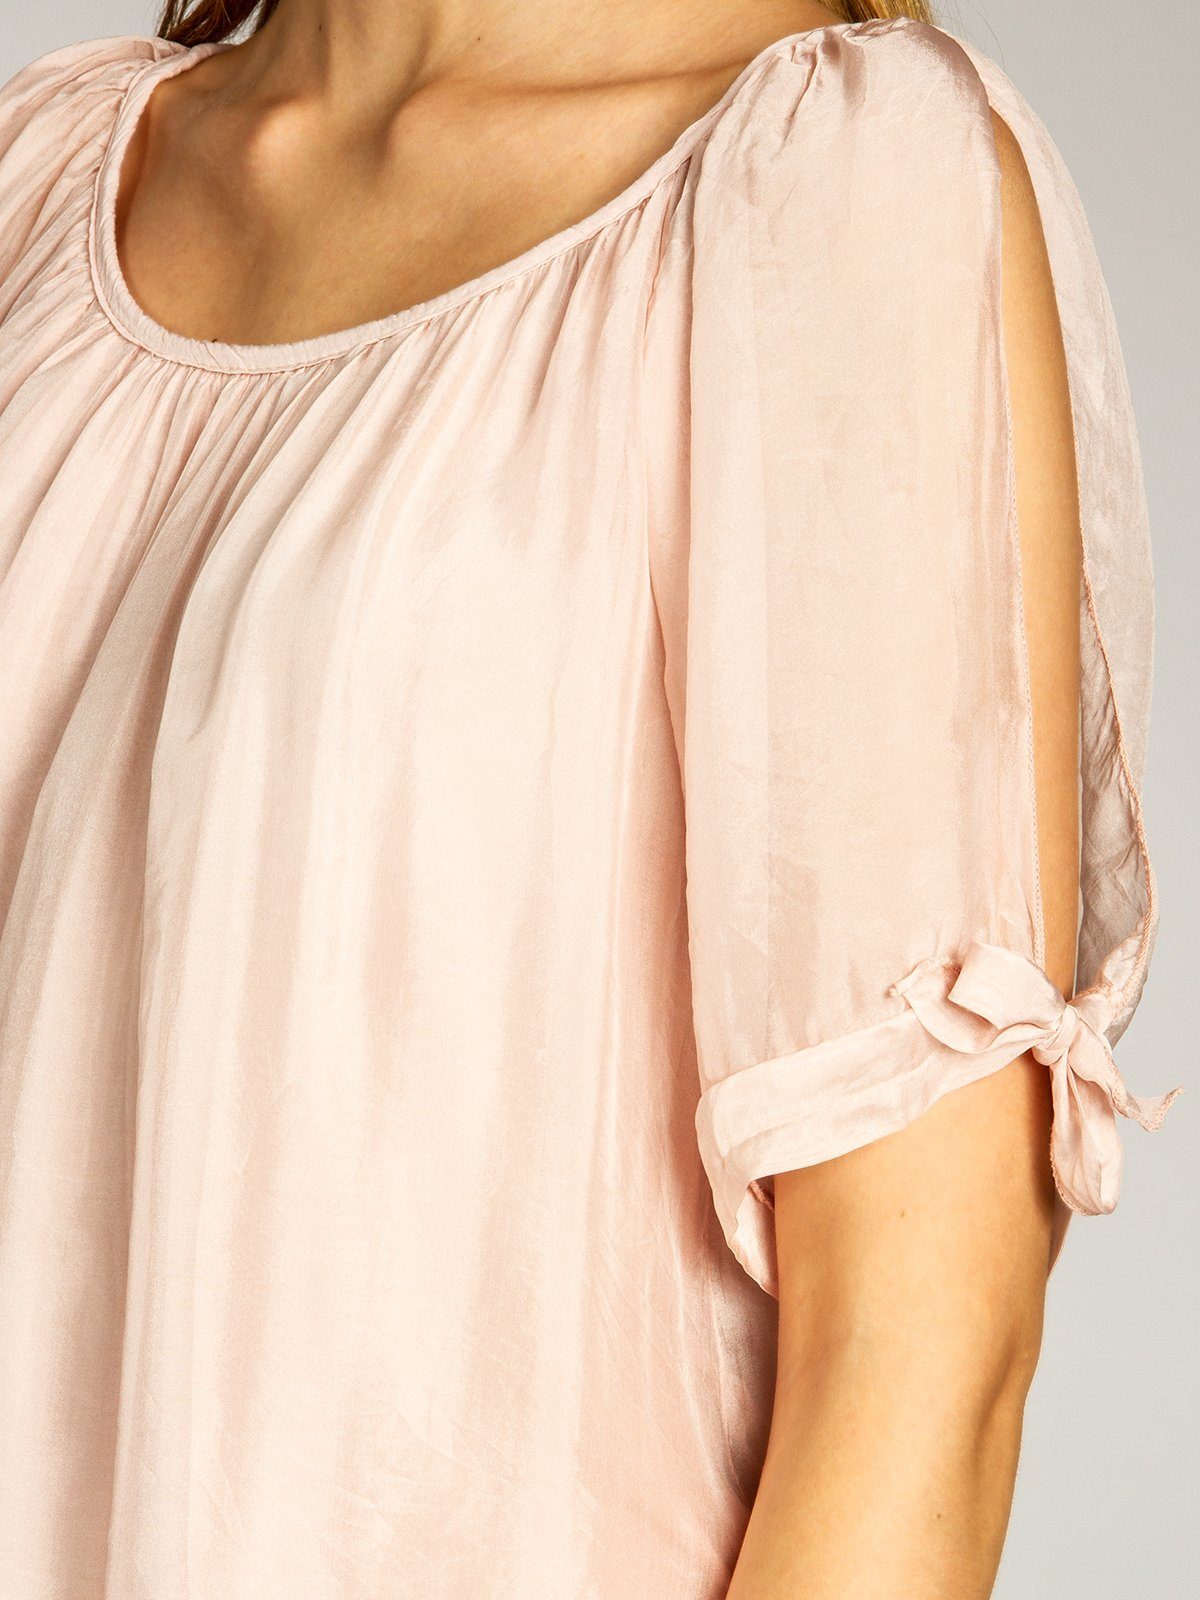 Caspar Shirtbluse Seidenanteil Bluse lange rosa BLU020 mit elegante leichte Sommer Damen